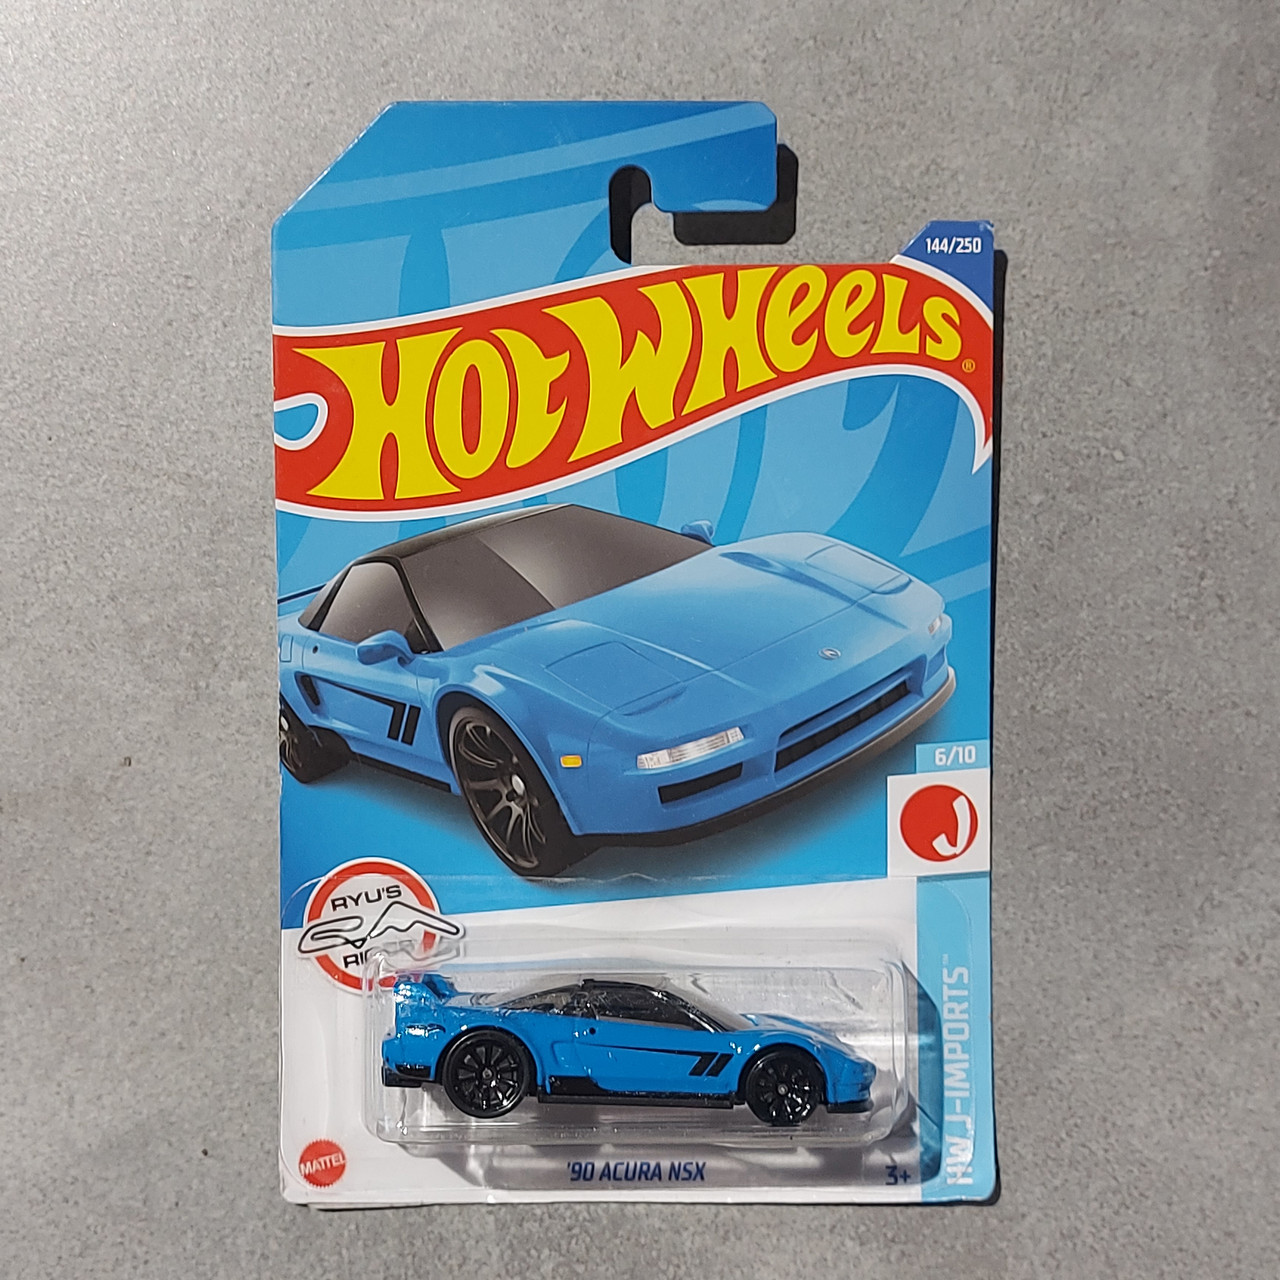 Оригинальная Машинка "Hot wheels" '90 ACURA NSX. HW J-IMPORTS. Mattel. 144/250. Хотвилс. Машинки. Подарок.